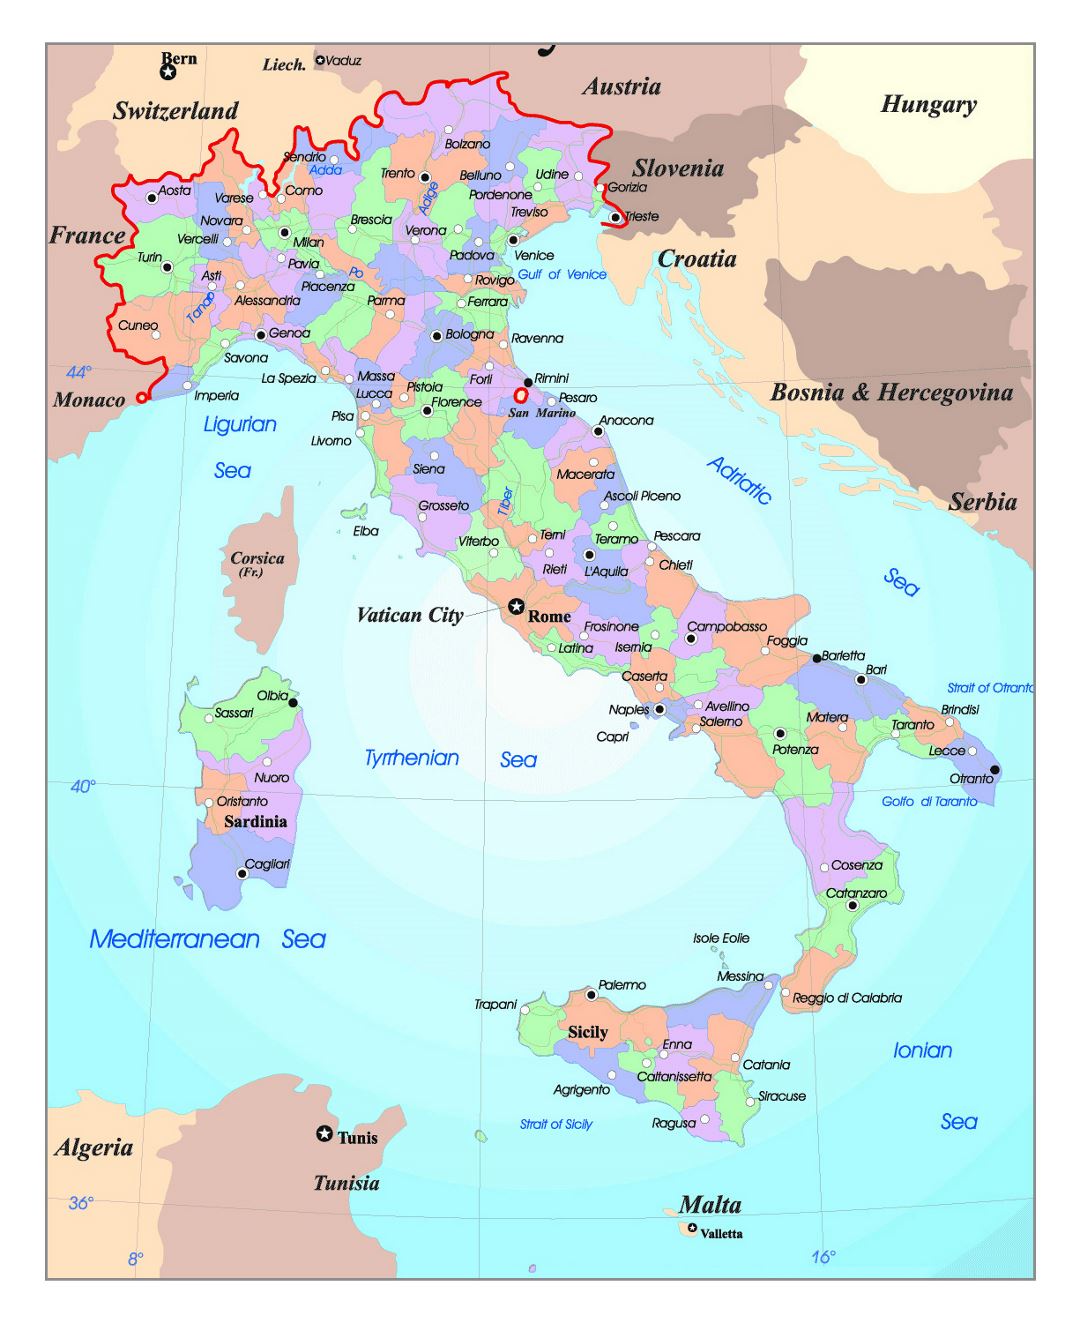 Mapa político y administrativo detallado de Italia, con las principales ciudades